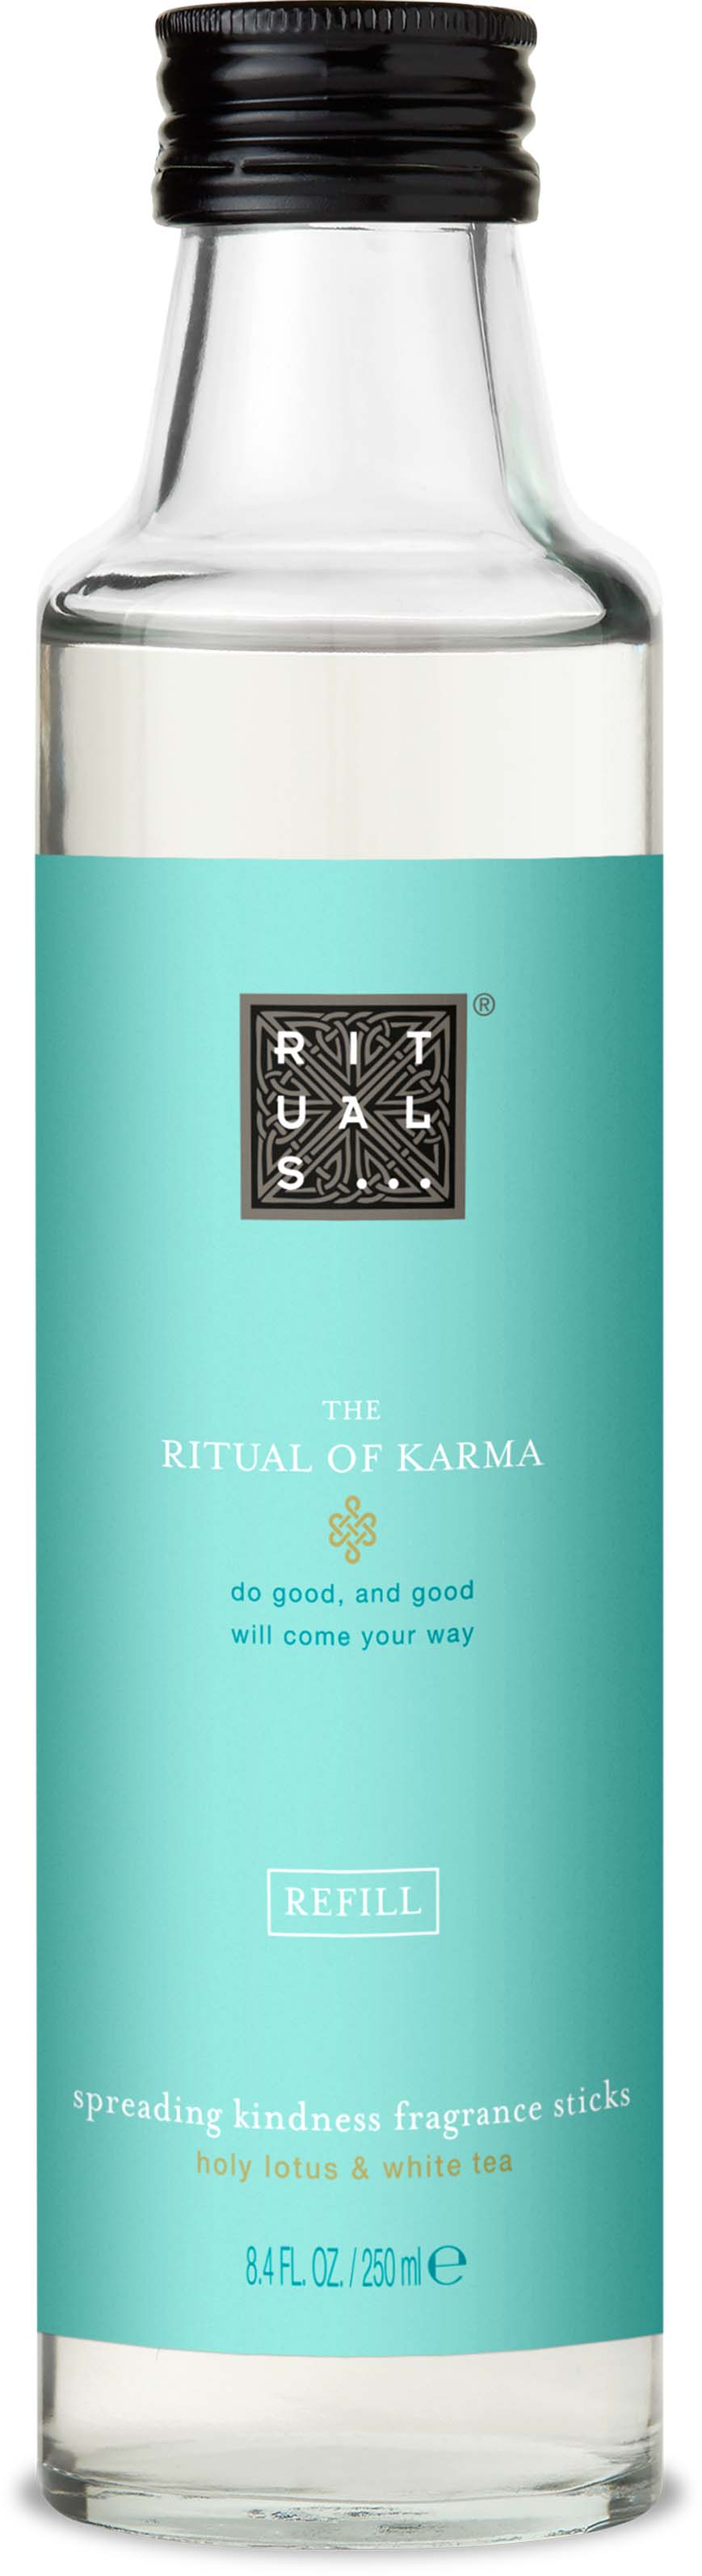 Diffuseur The Ritual of Karma 250 mL - Cadeaux d'affaires - Cadoétik